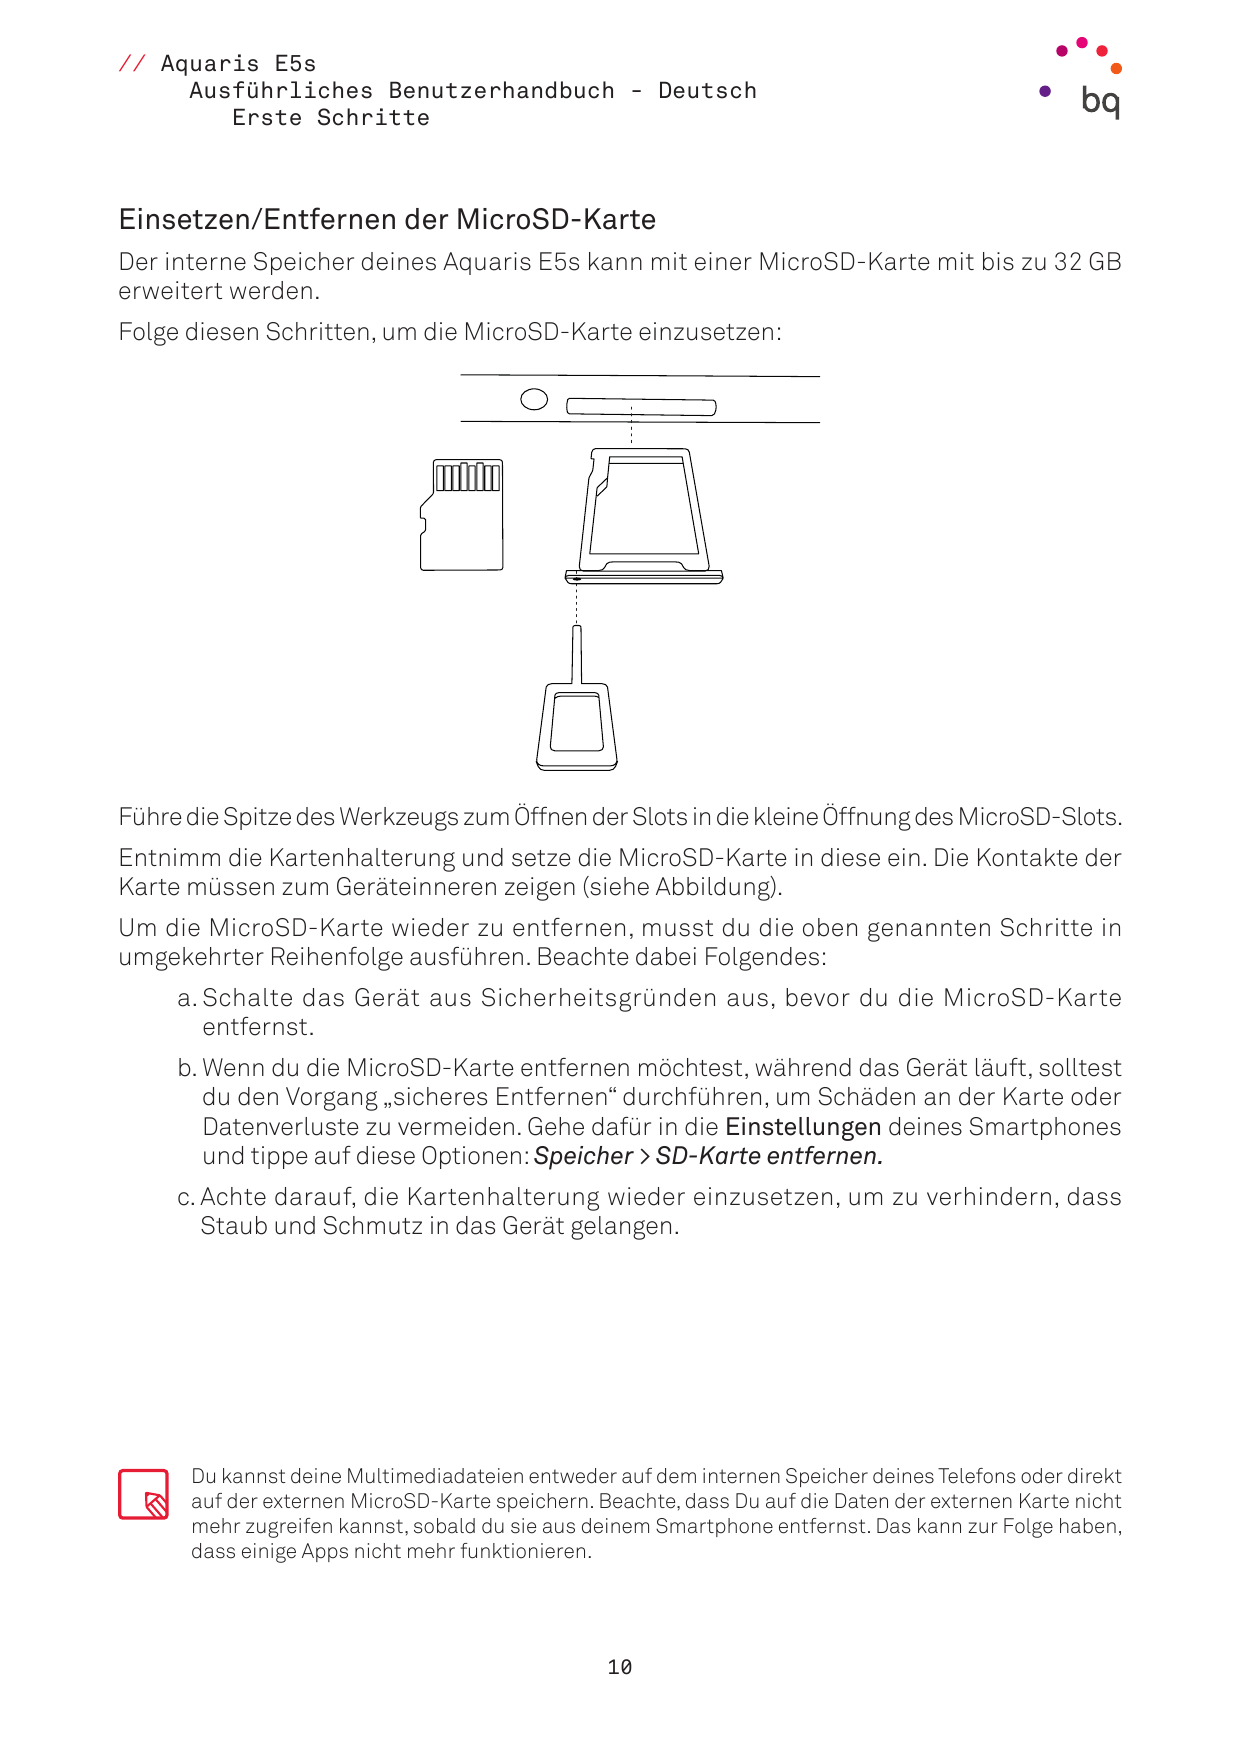 // Aquaris E5sAusführliches Benutzerhandbuch - DeutschErste SchritteEinsetzen/Entfernen der MicroSD-KarteDer interne Speicher de